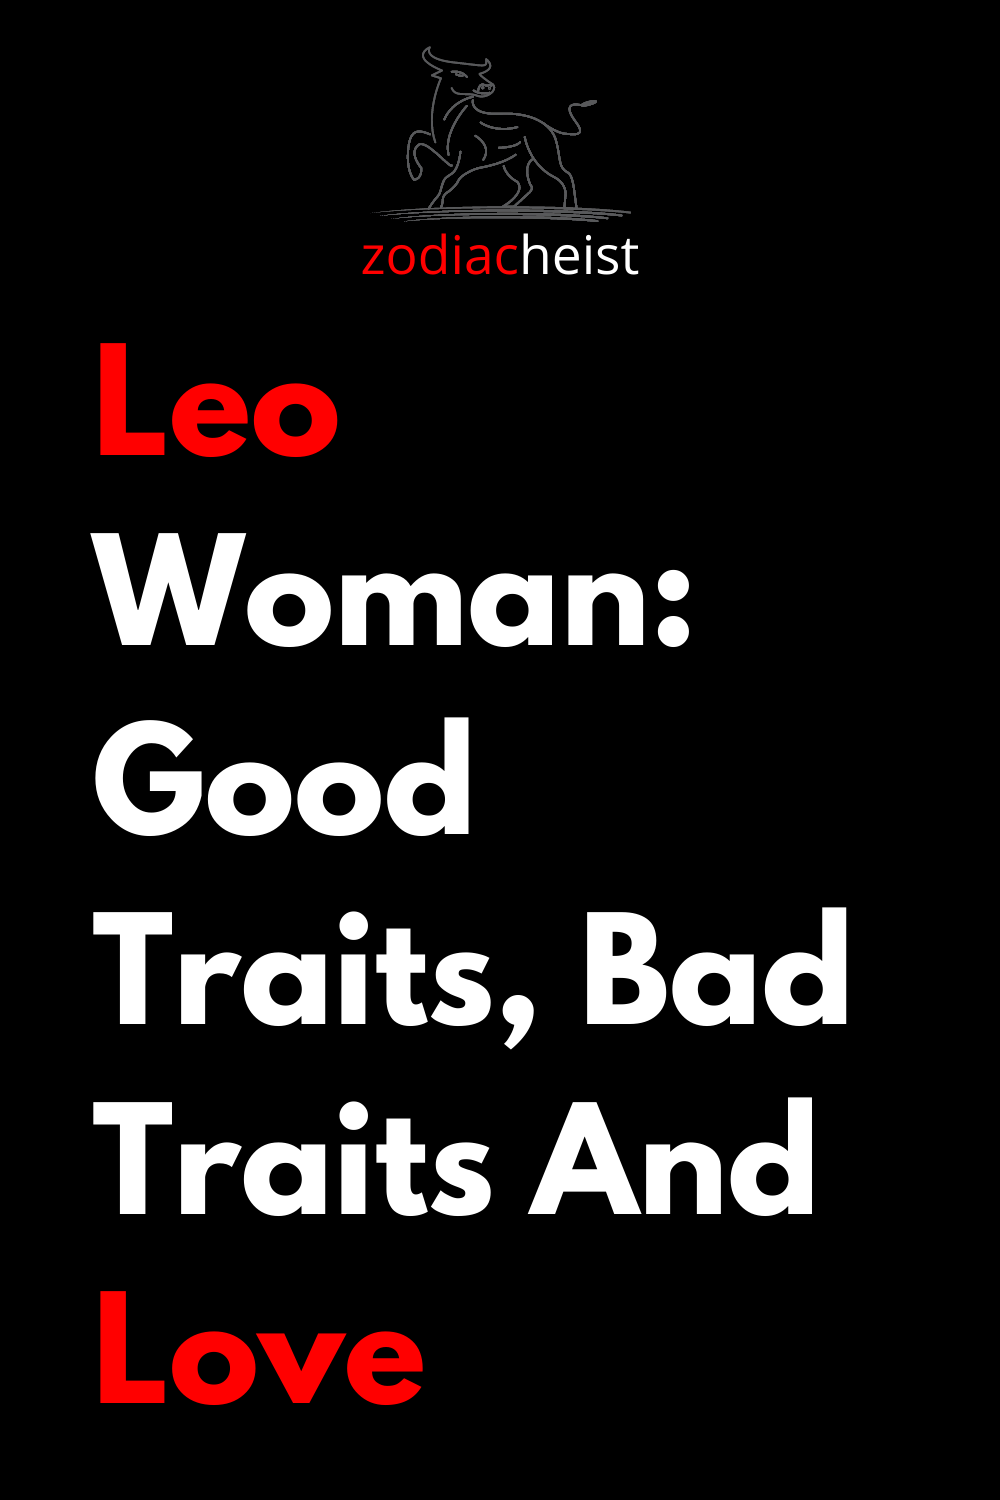 Leo Woman: Good Traits, Bad Traits And Love